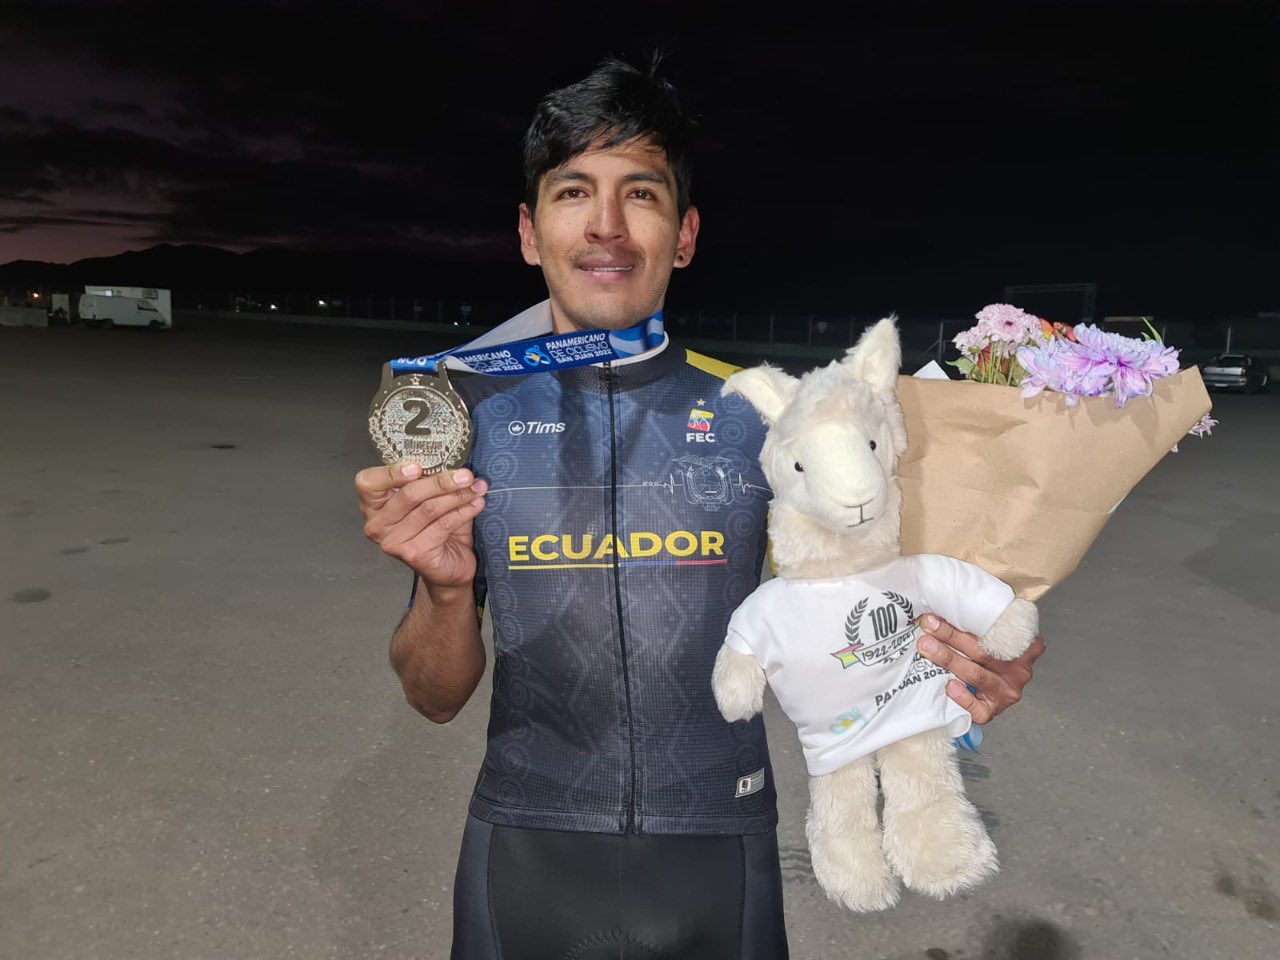 Sebastián Novoa sumó una medalla de plata en el Panamericano de Ciclismo